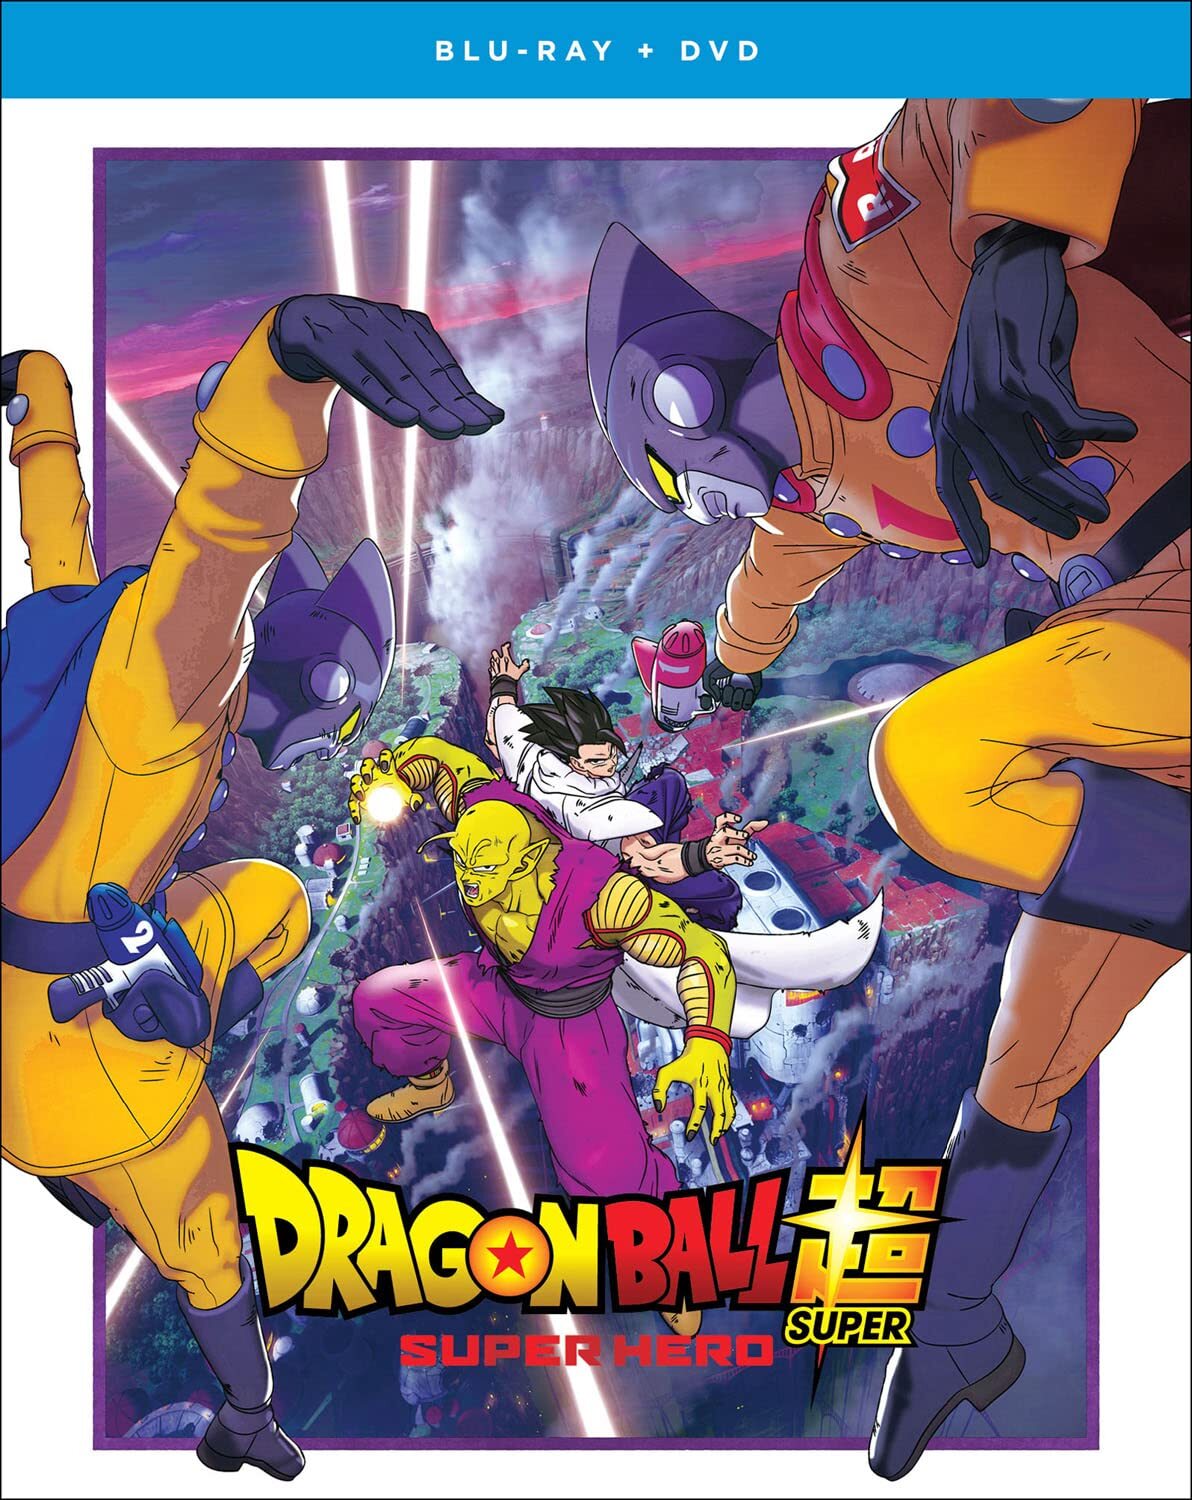 Dragon Ball Z: Best of DVD releases • Kanzenshuu